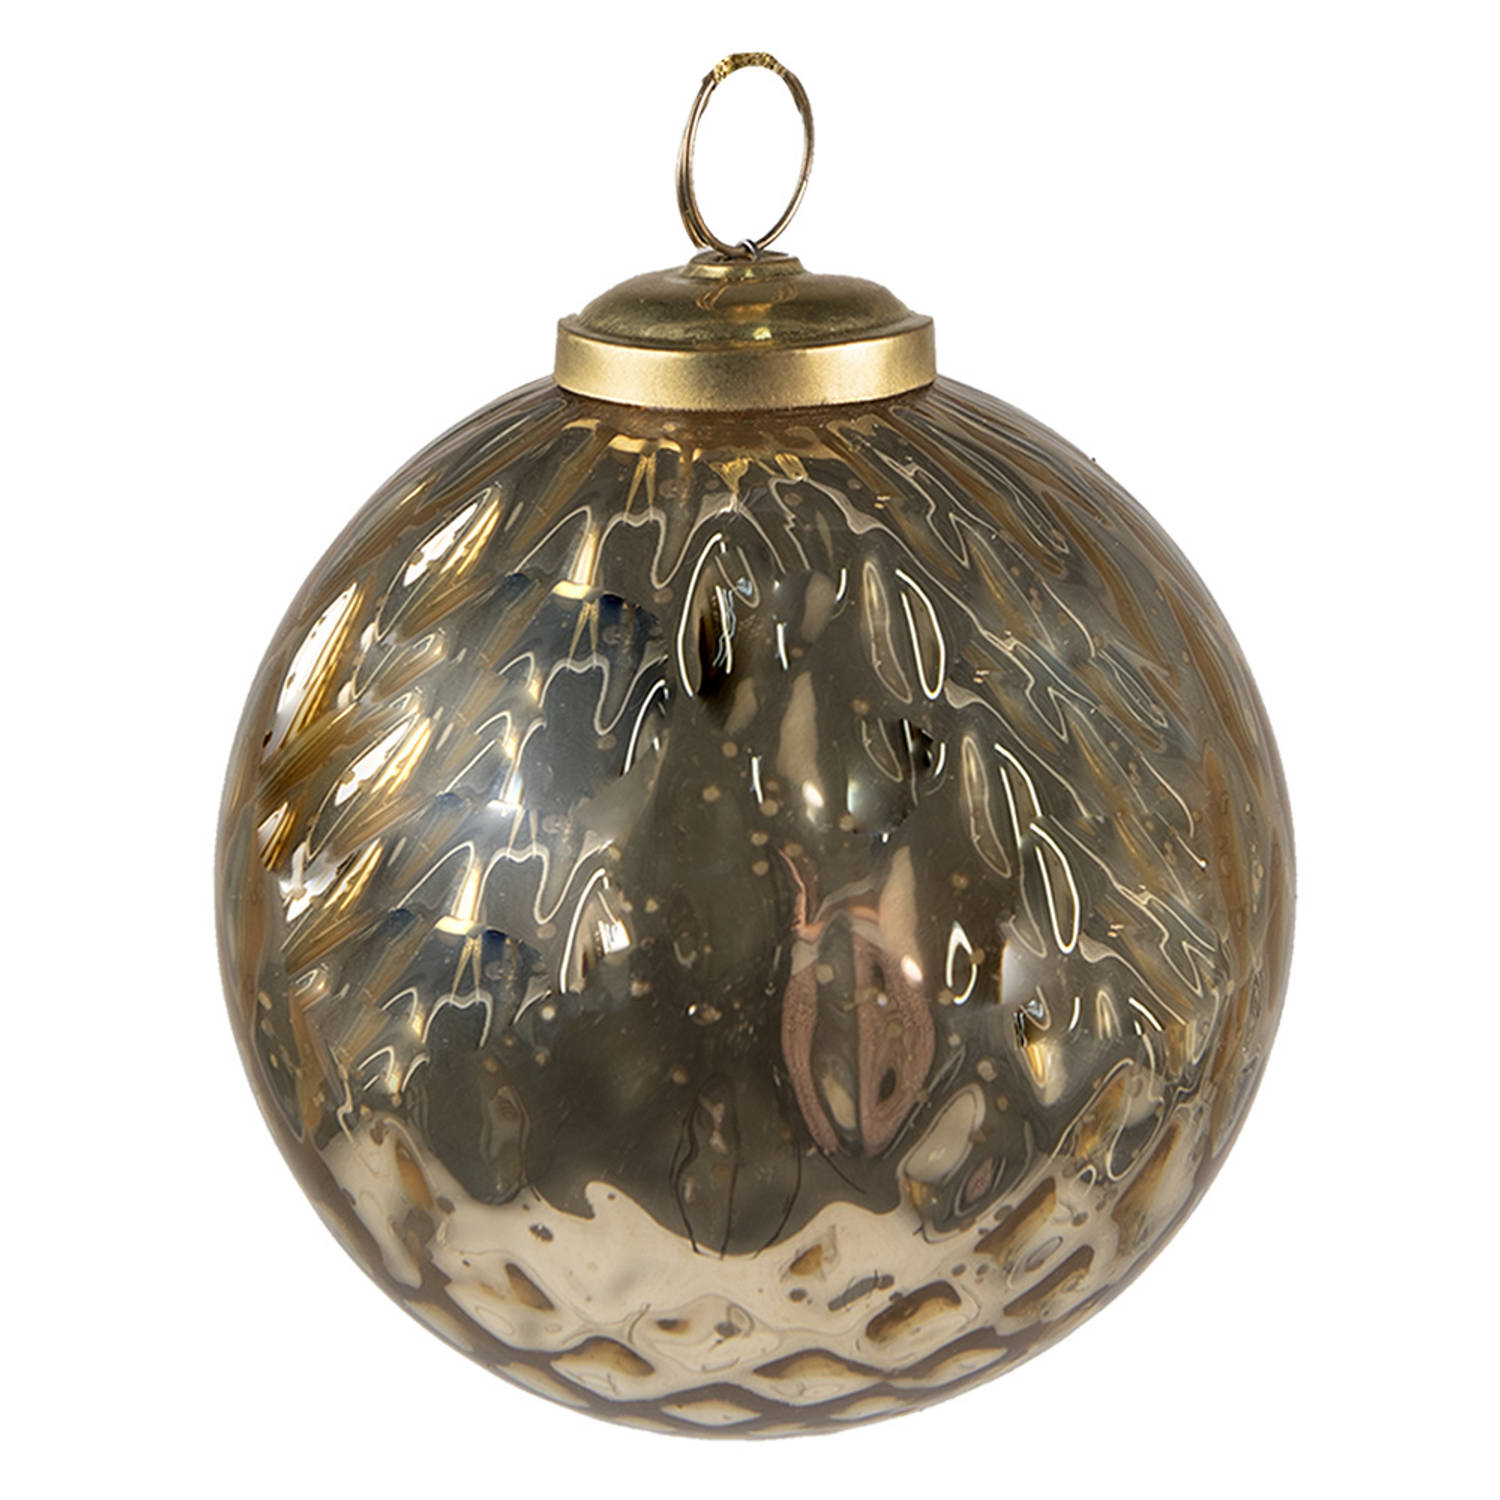 HAES DECO - Kerstbal - Formaat Ø 9x11 cm - Kleur Goudkleurig - Materiaal Glas - Kerstversiering, Kerstdecoratie, Decoratie Hanger, Kerstboomversiering